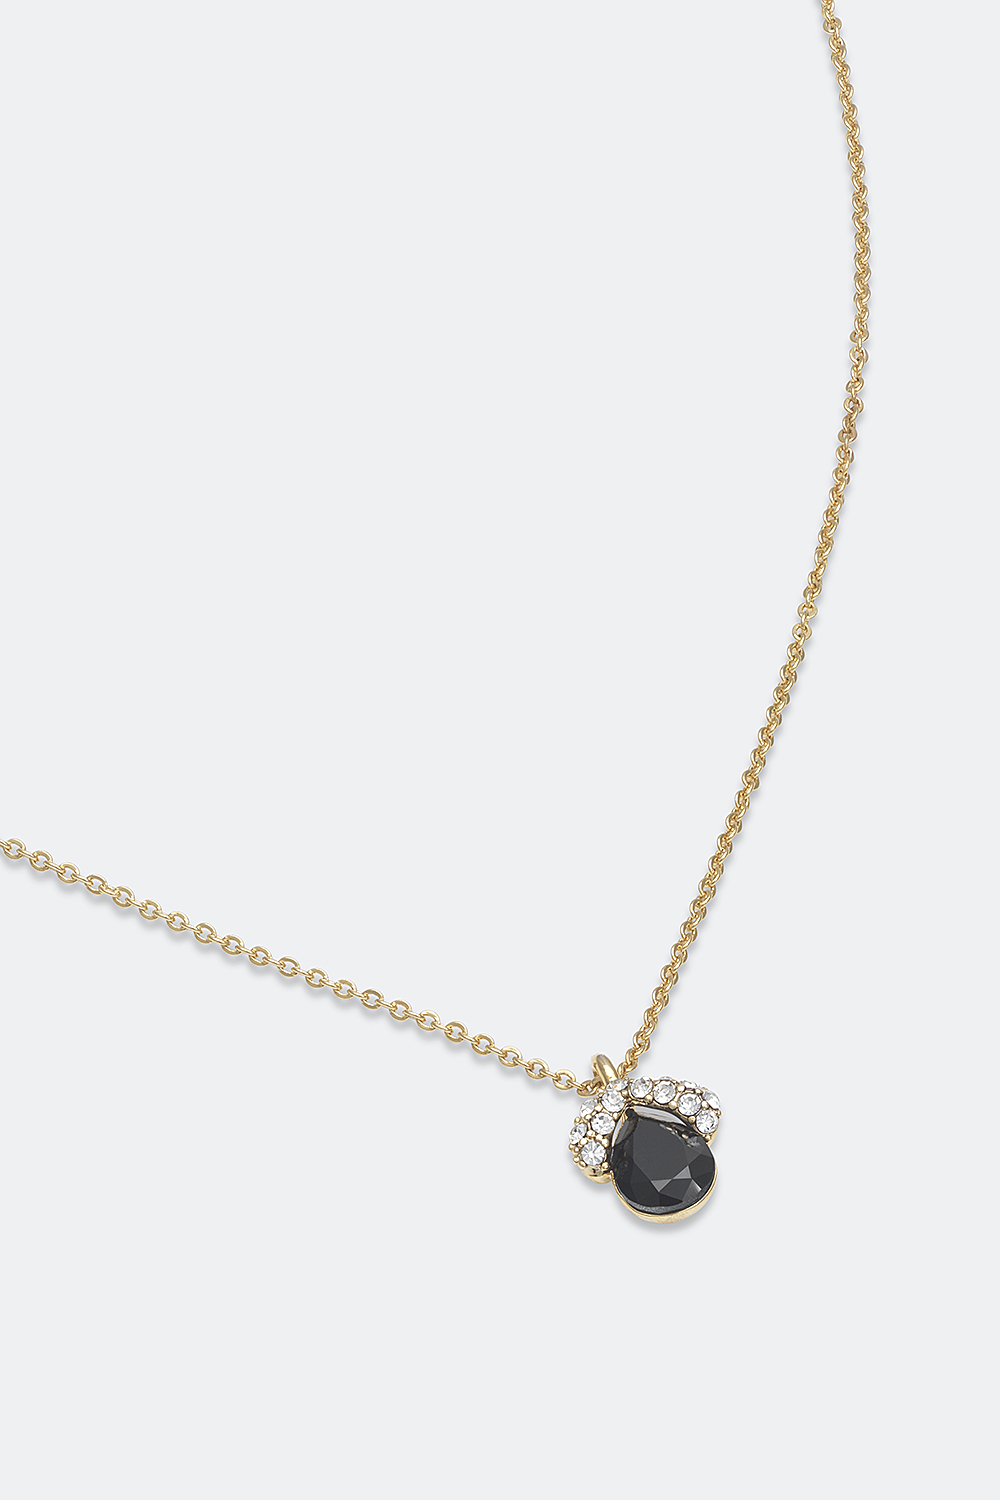 Køb Miss Grace necklace - Black onyx Glitter.dk